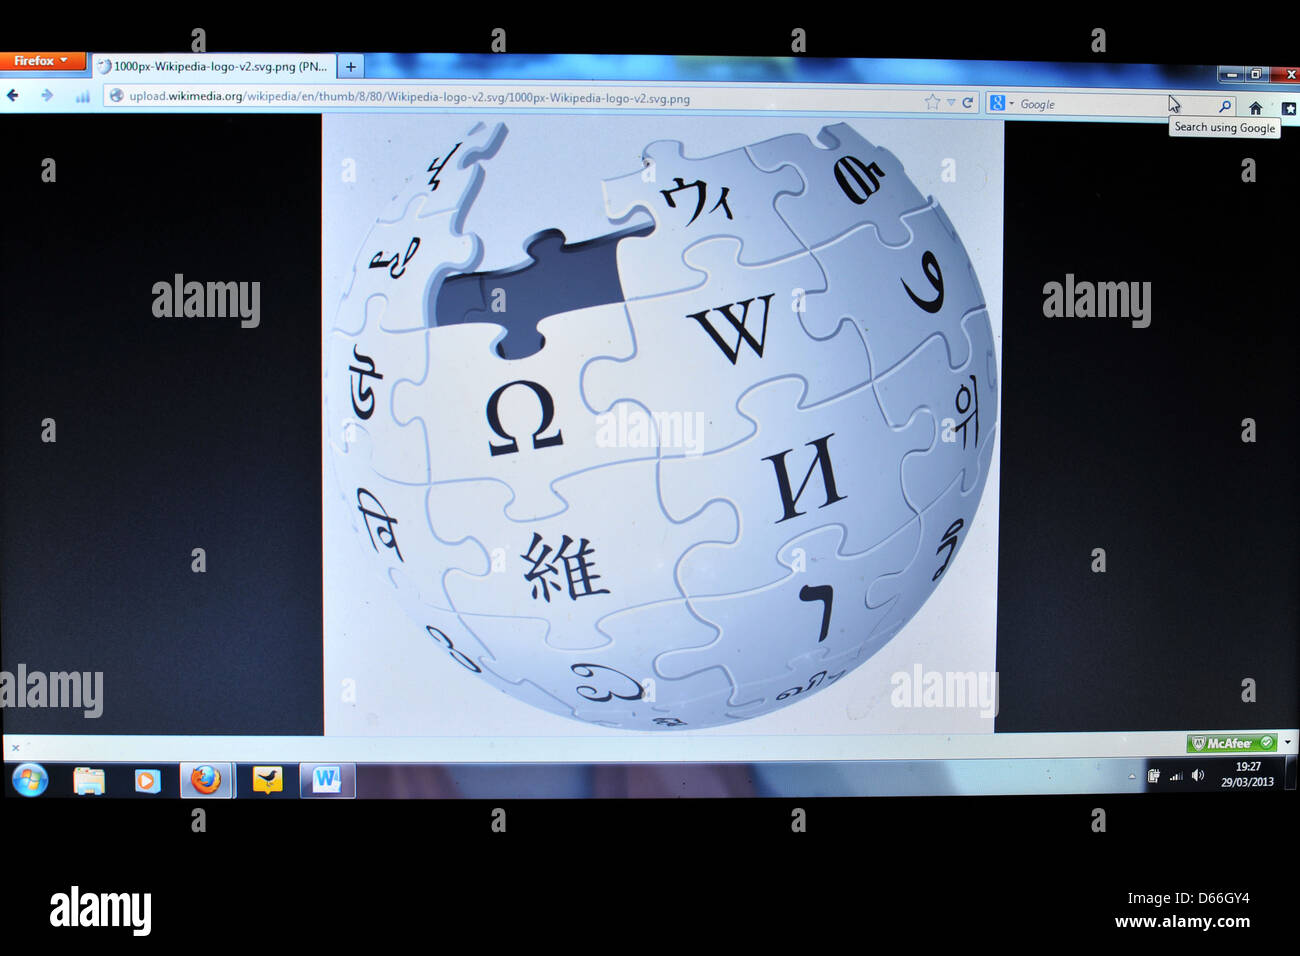 Bild von einem Computer-Bildschirm zeigt das Wikipedia-Globus-Logo. Stockfoto